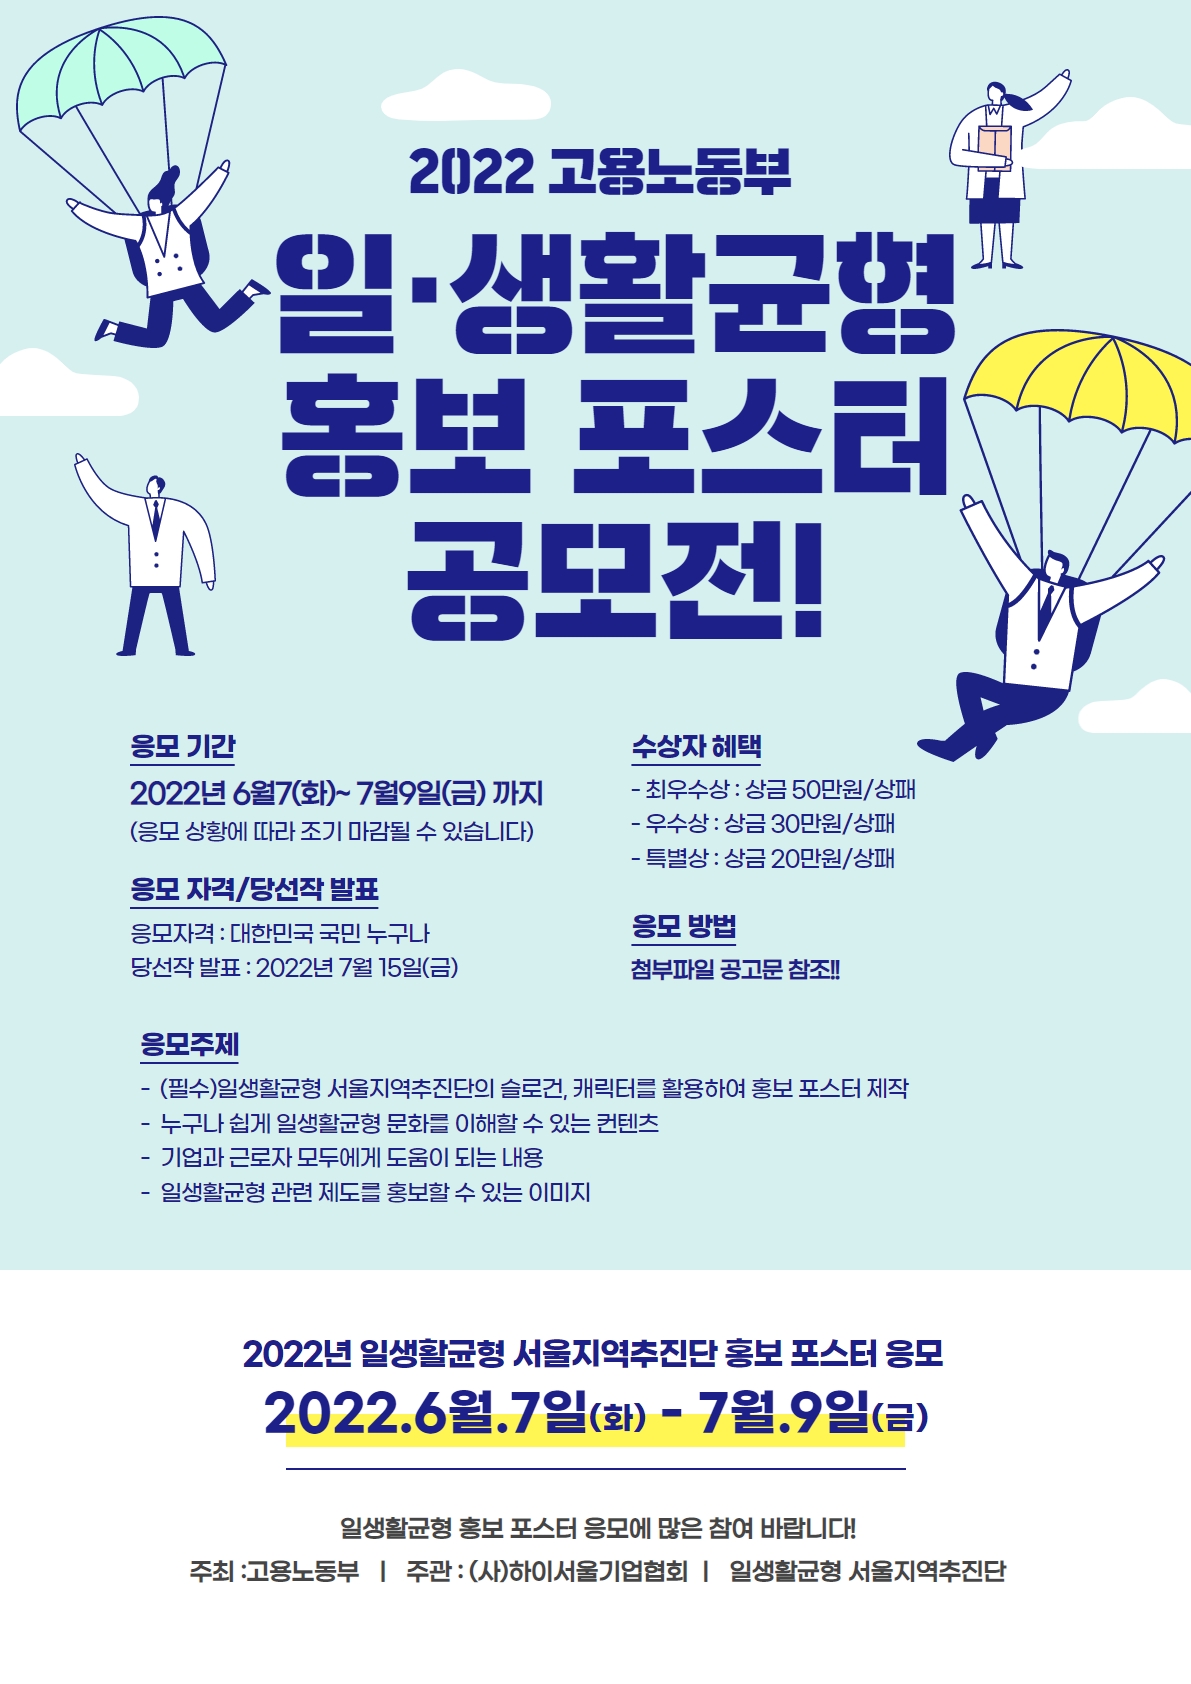 일생활균형 서울지역추진단 홍보 포스터 공모